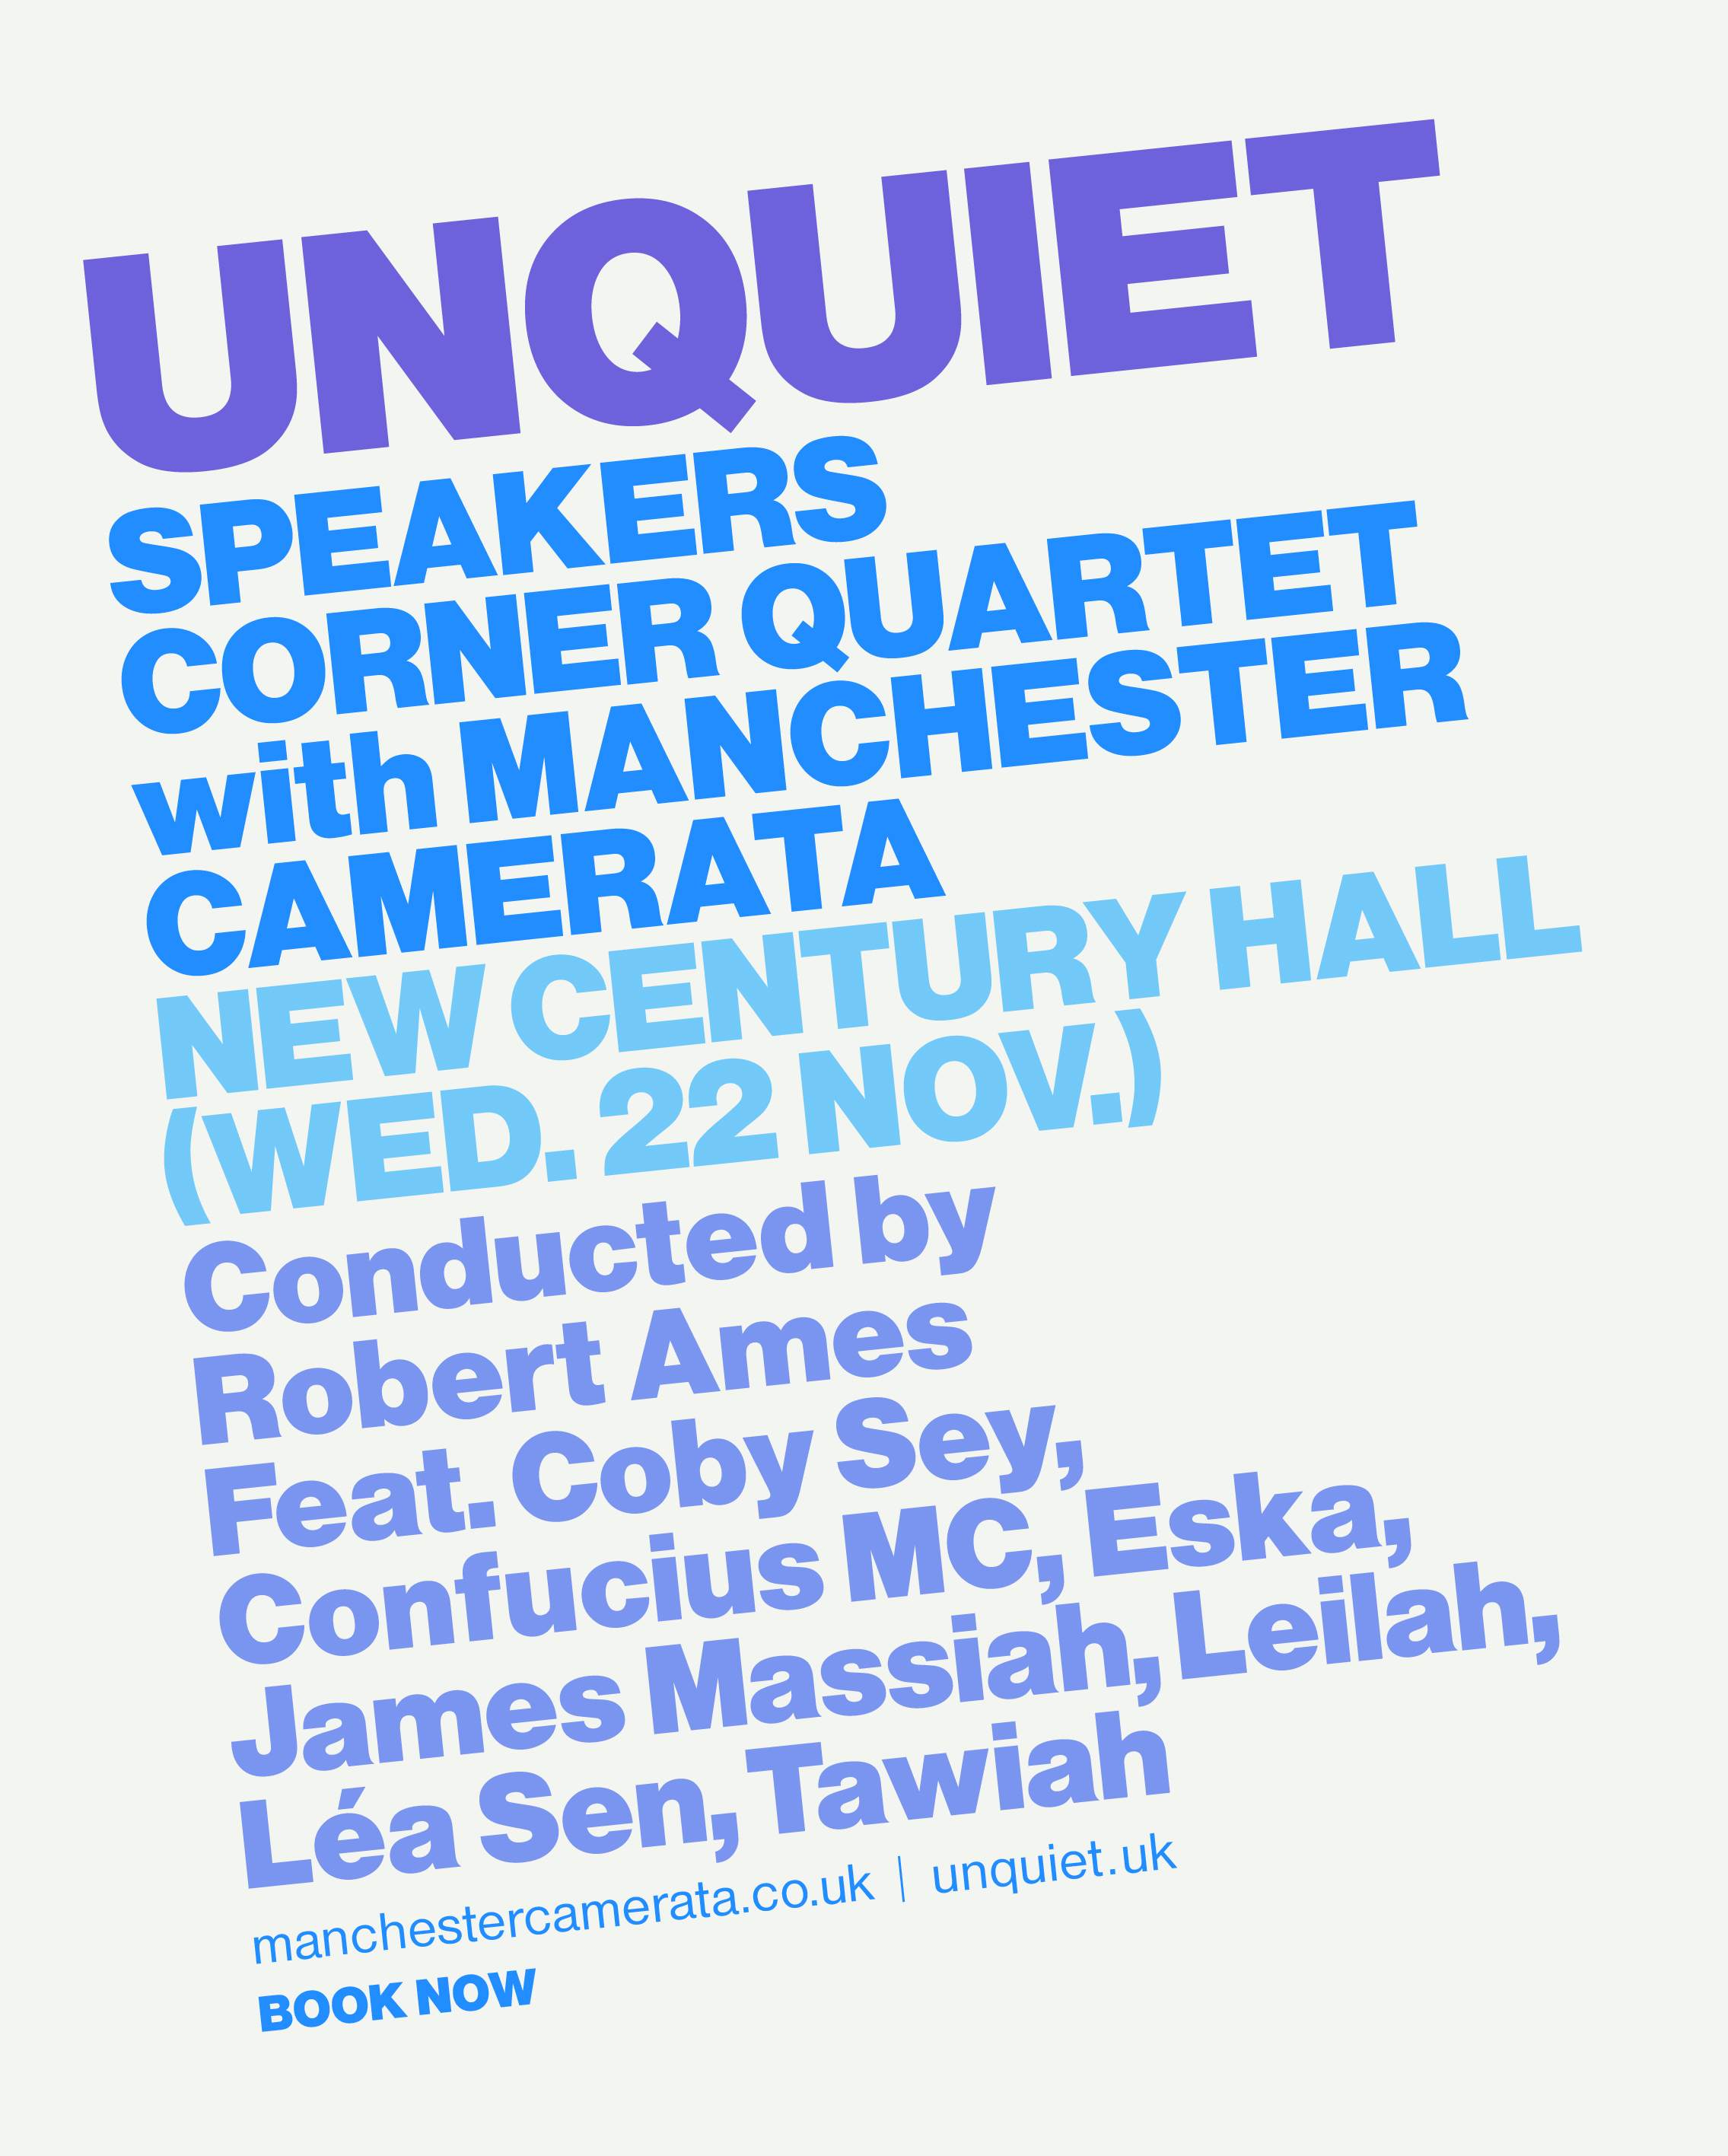 Unquiet: Speakers Corner Quartet with Manchester Camerata - Página frontal